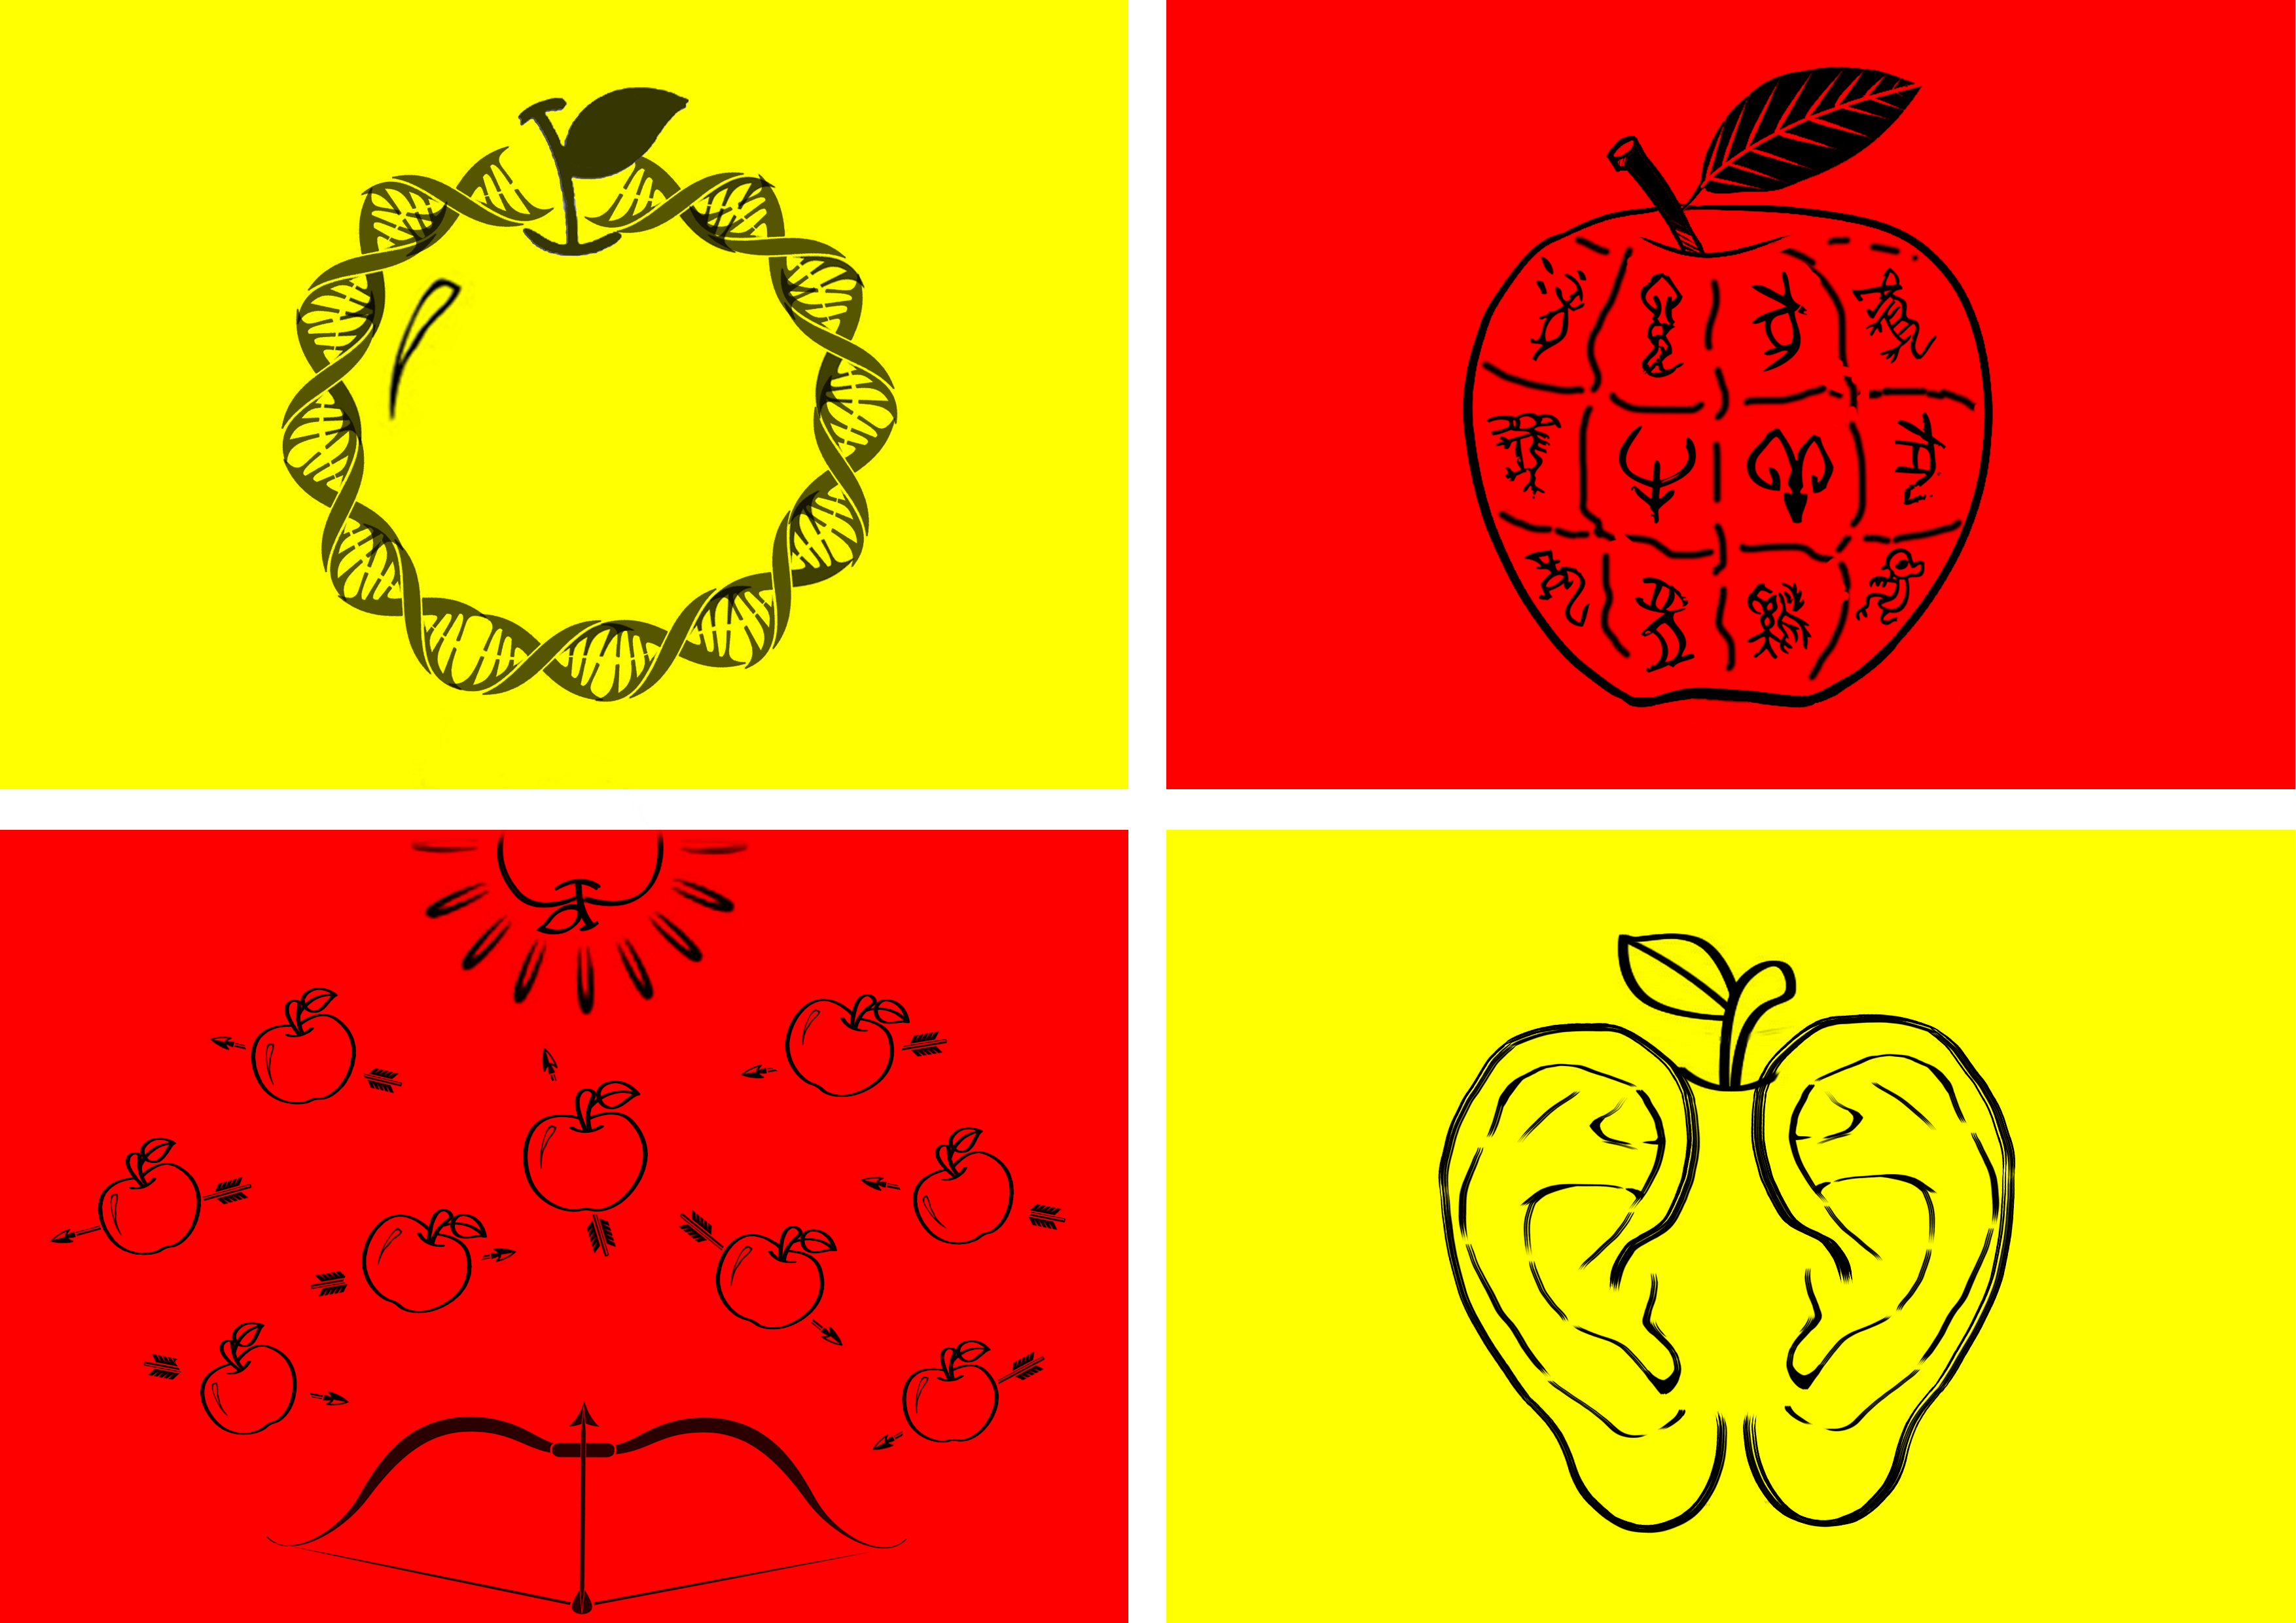 苹果与科学的创意图形图片